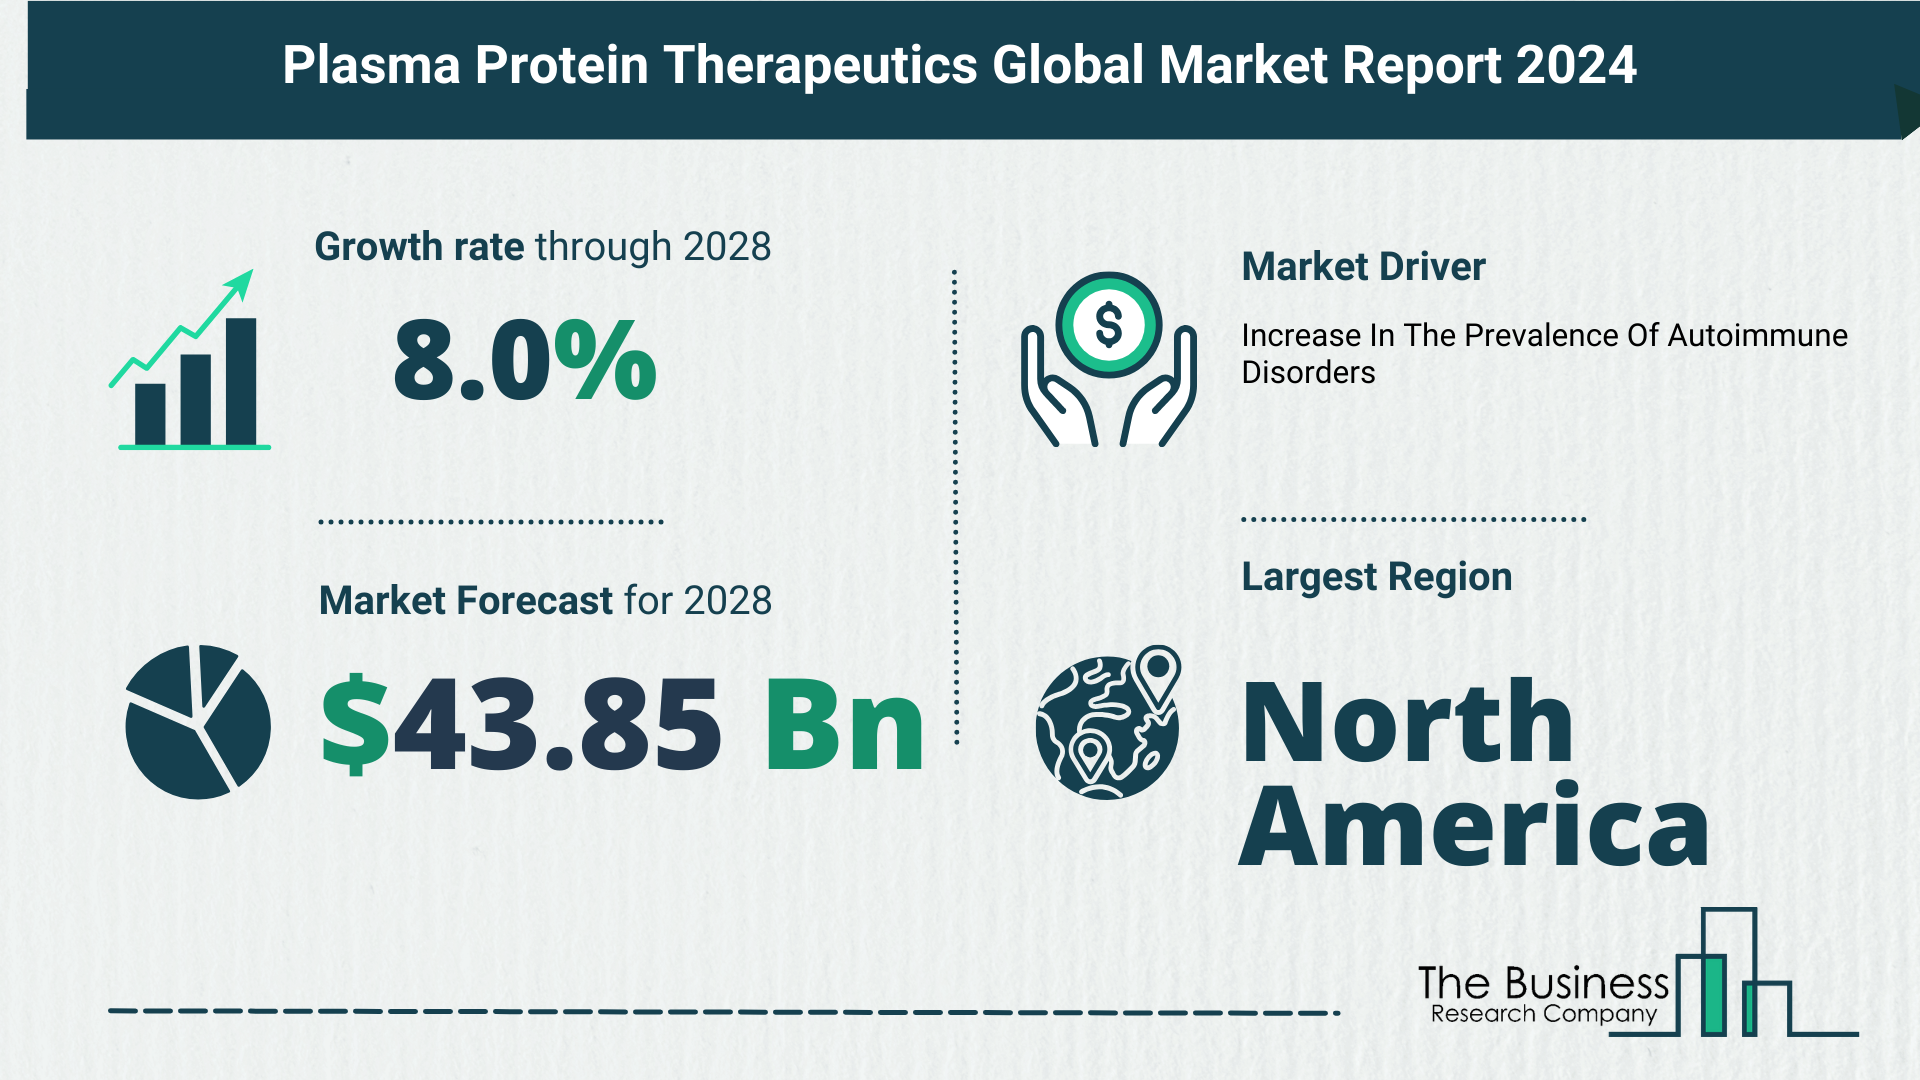 Global Plasma Protein Therapeutics Market